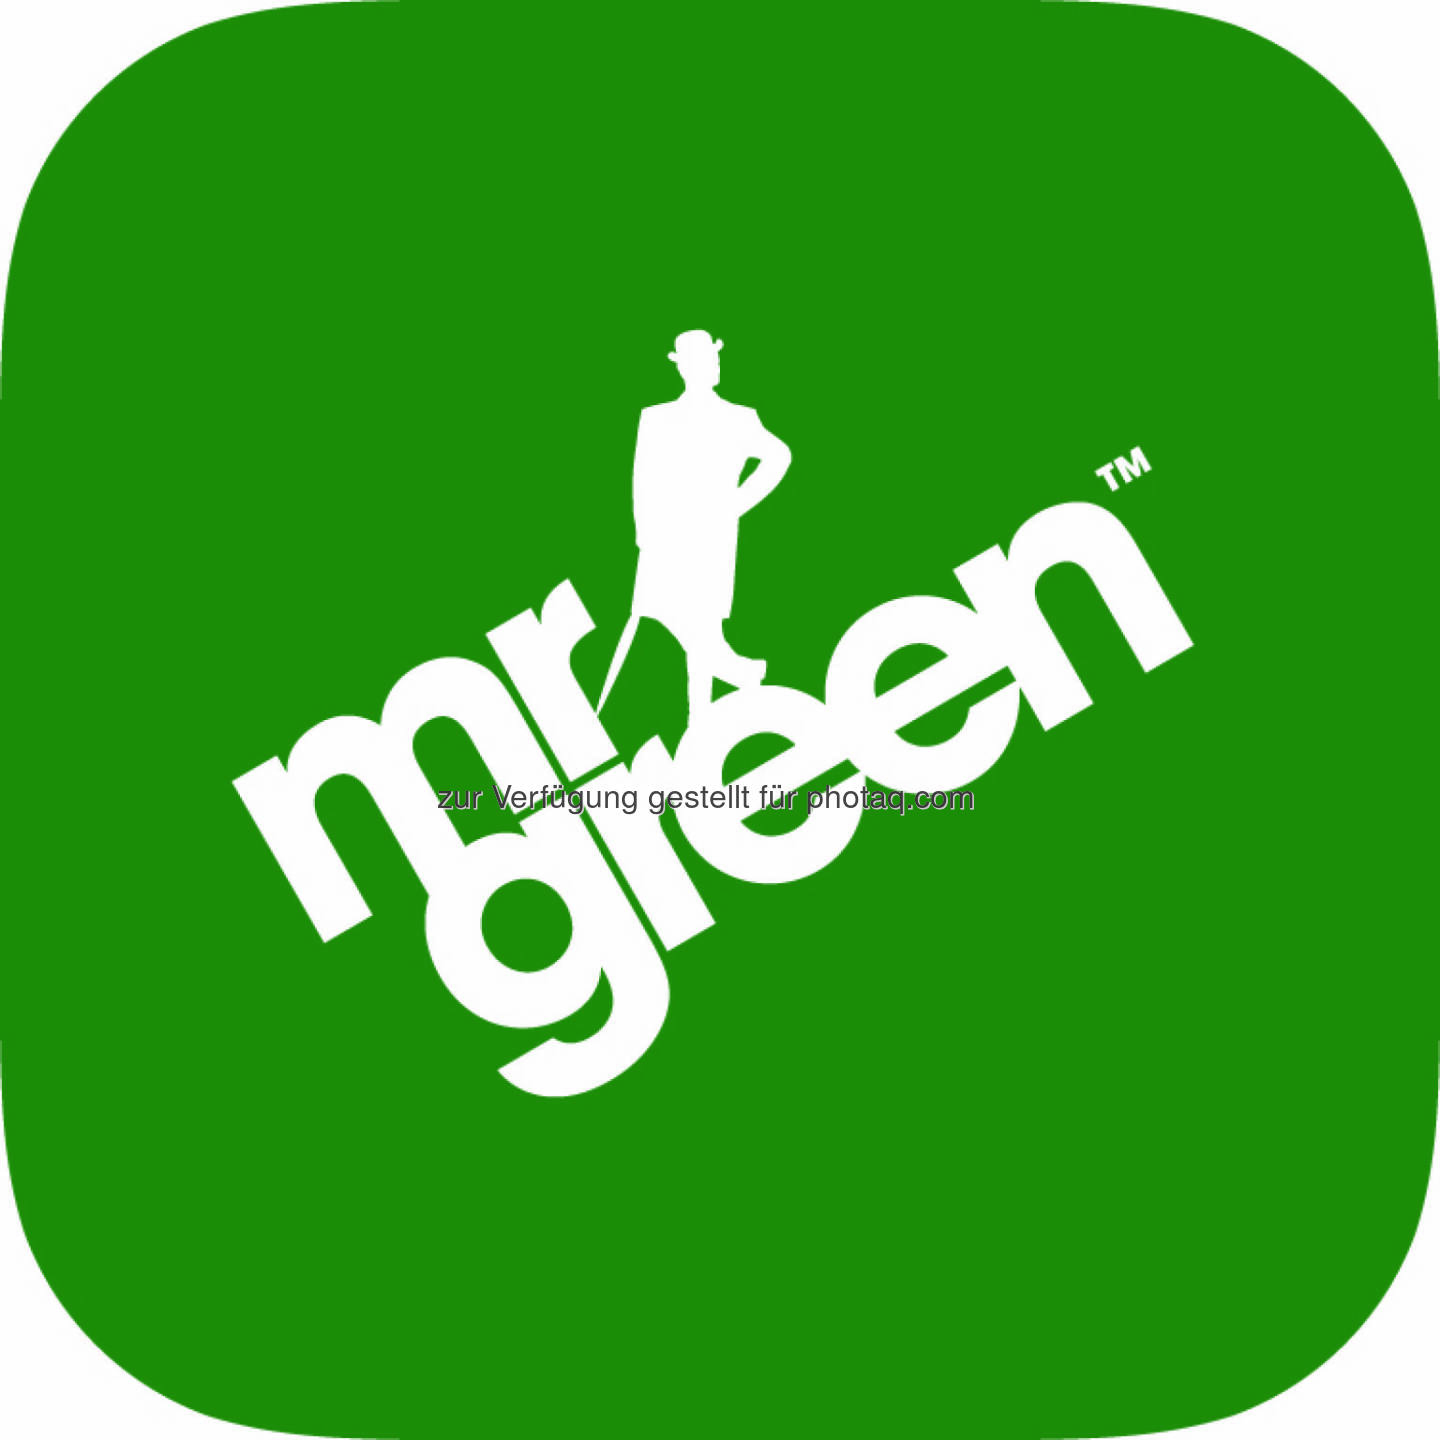 Mr Green App Logo : Das Online-Casino der Zukunft: Spieler begeistert über mobile Möglichkeiten : Fotocredit: (c) Mr Green Limited (TM) https://www.mrgreen.com